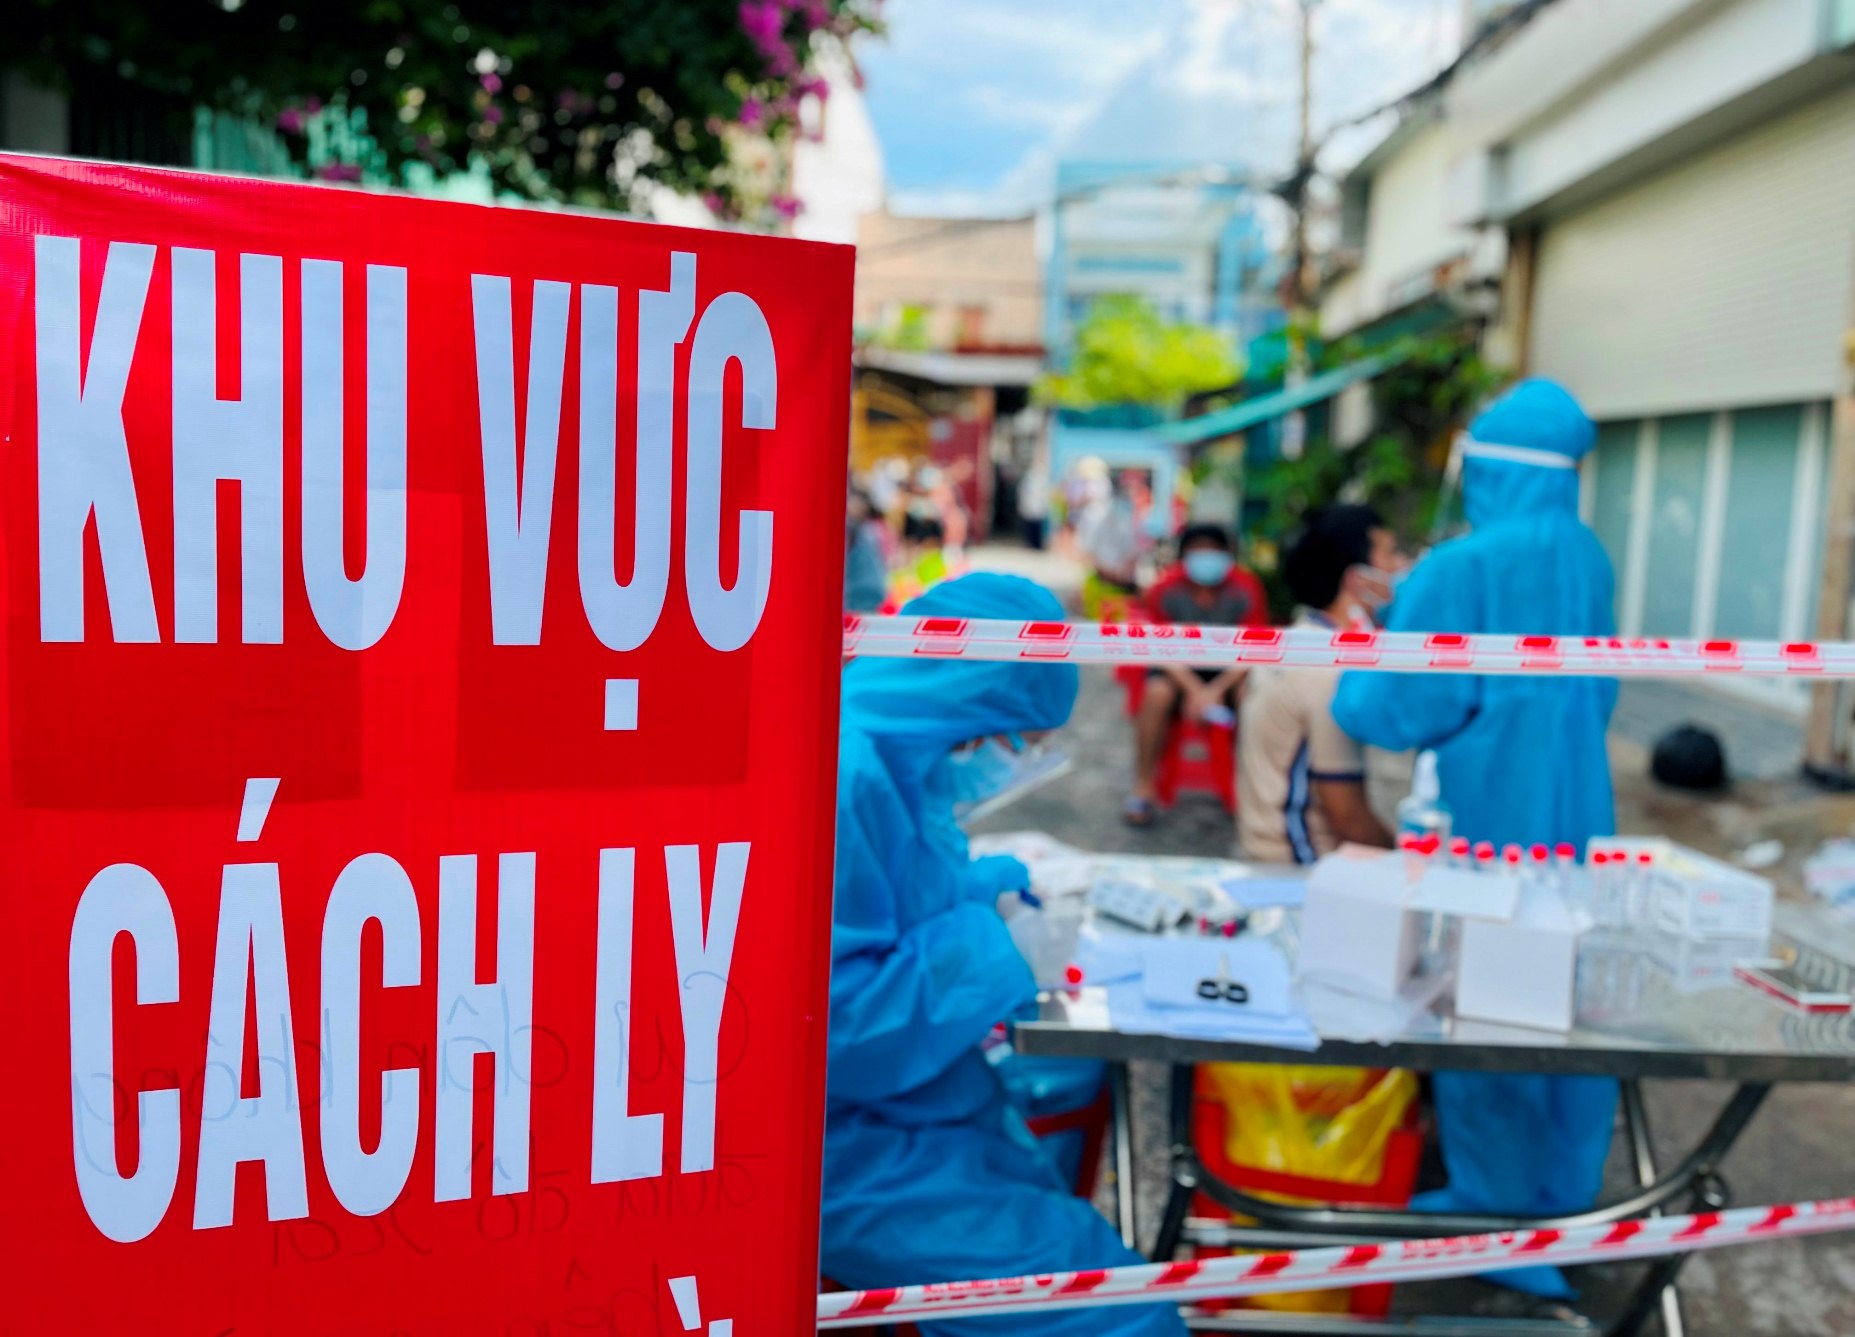 Hình ảnh đường phố Sài Gòn mùa dịch trong năm đặc biệt sẽ cho bạn thấy một thành phố đang vượt qua khó khăn, đổi mới để vươn lên trong tương lai. Những hình ảnh này sẽ làm nên một giá trị vô giá cho các thế hệ sau, hãy cùng tìm hiểu và yêu thương Sài Gòn trong những tháng ngày đầy thử thách.